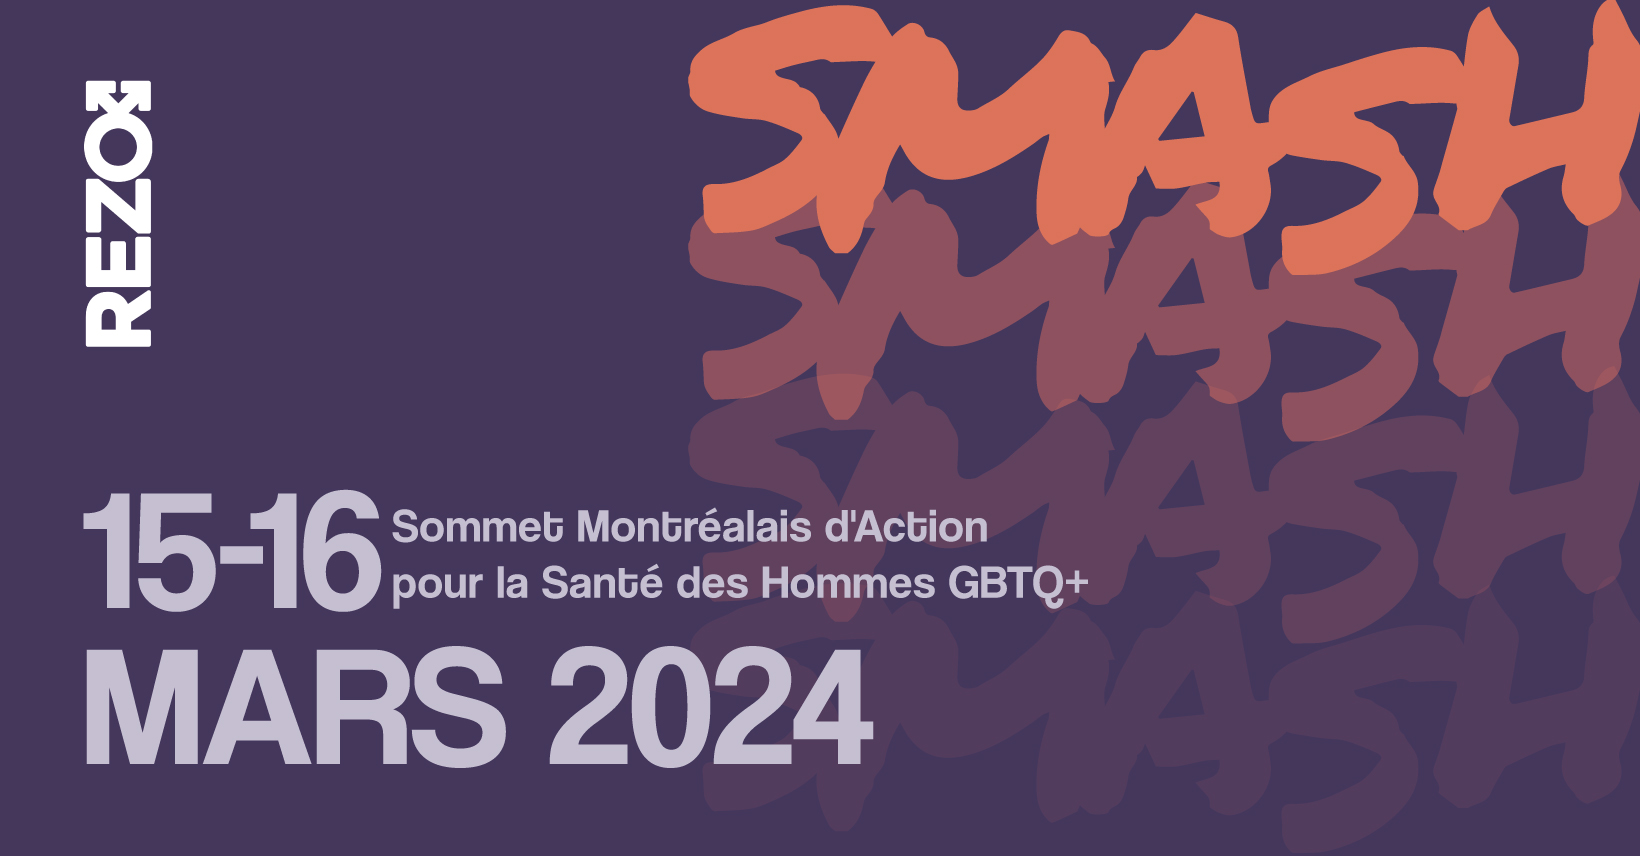 SMASH - Sommet Montréalais d'Action pour la Santé des Hommes GBTQ+